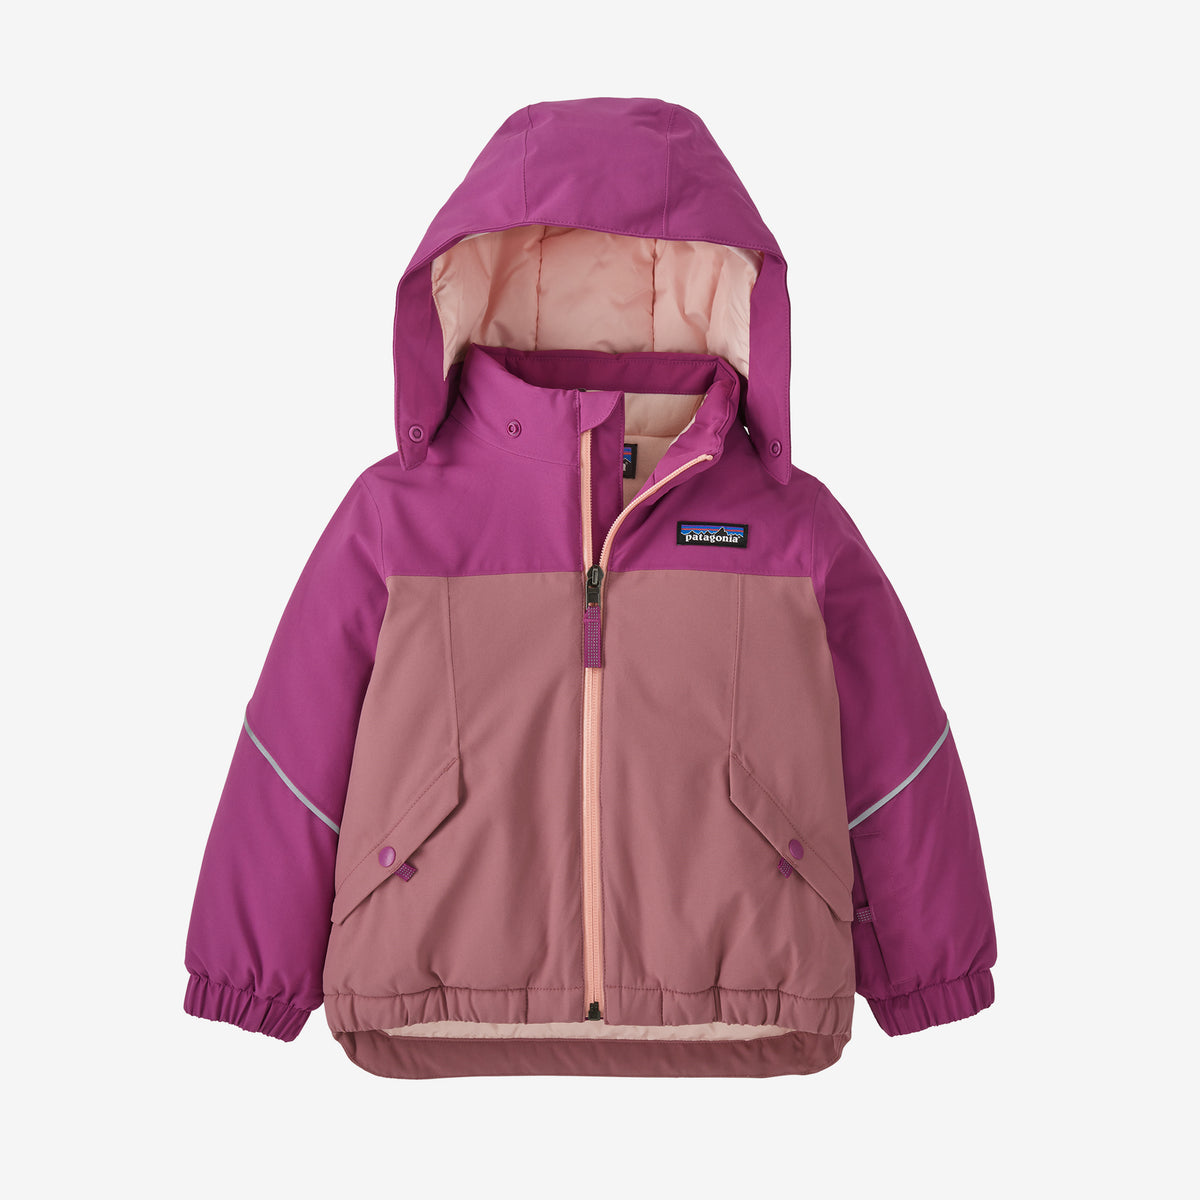 Patagonia Baby Snow Pile Jacket - Light Star Pink